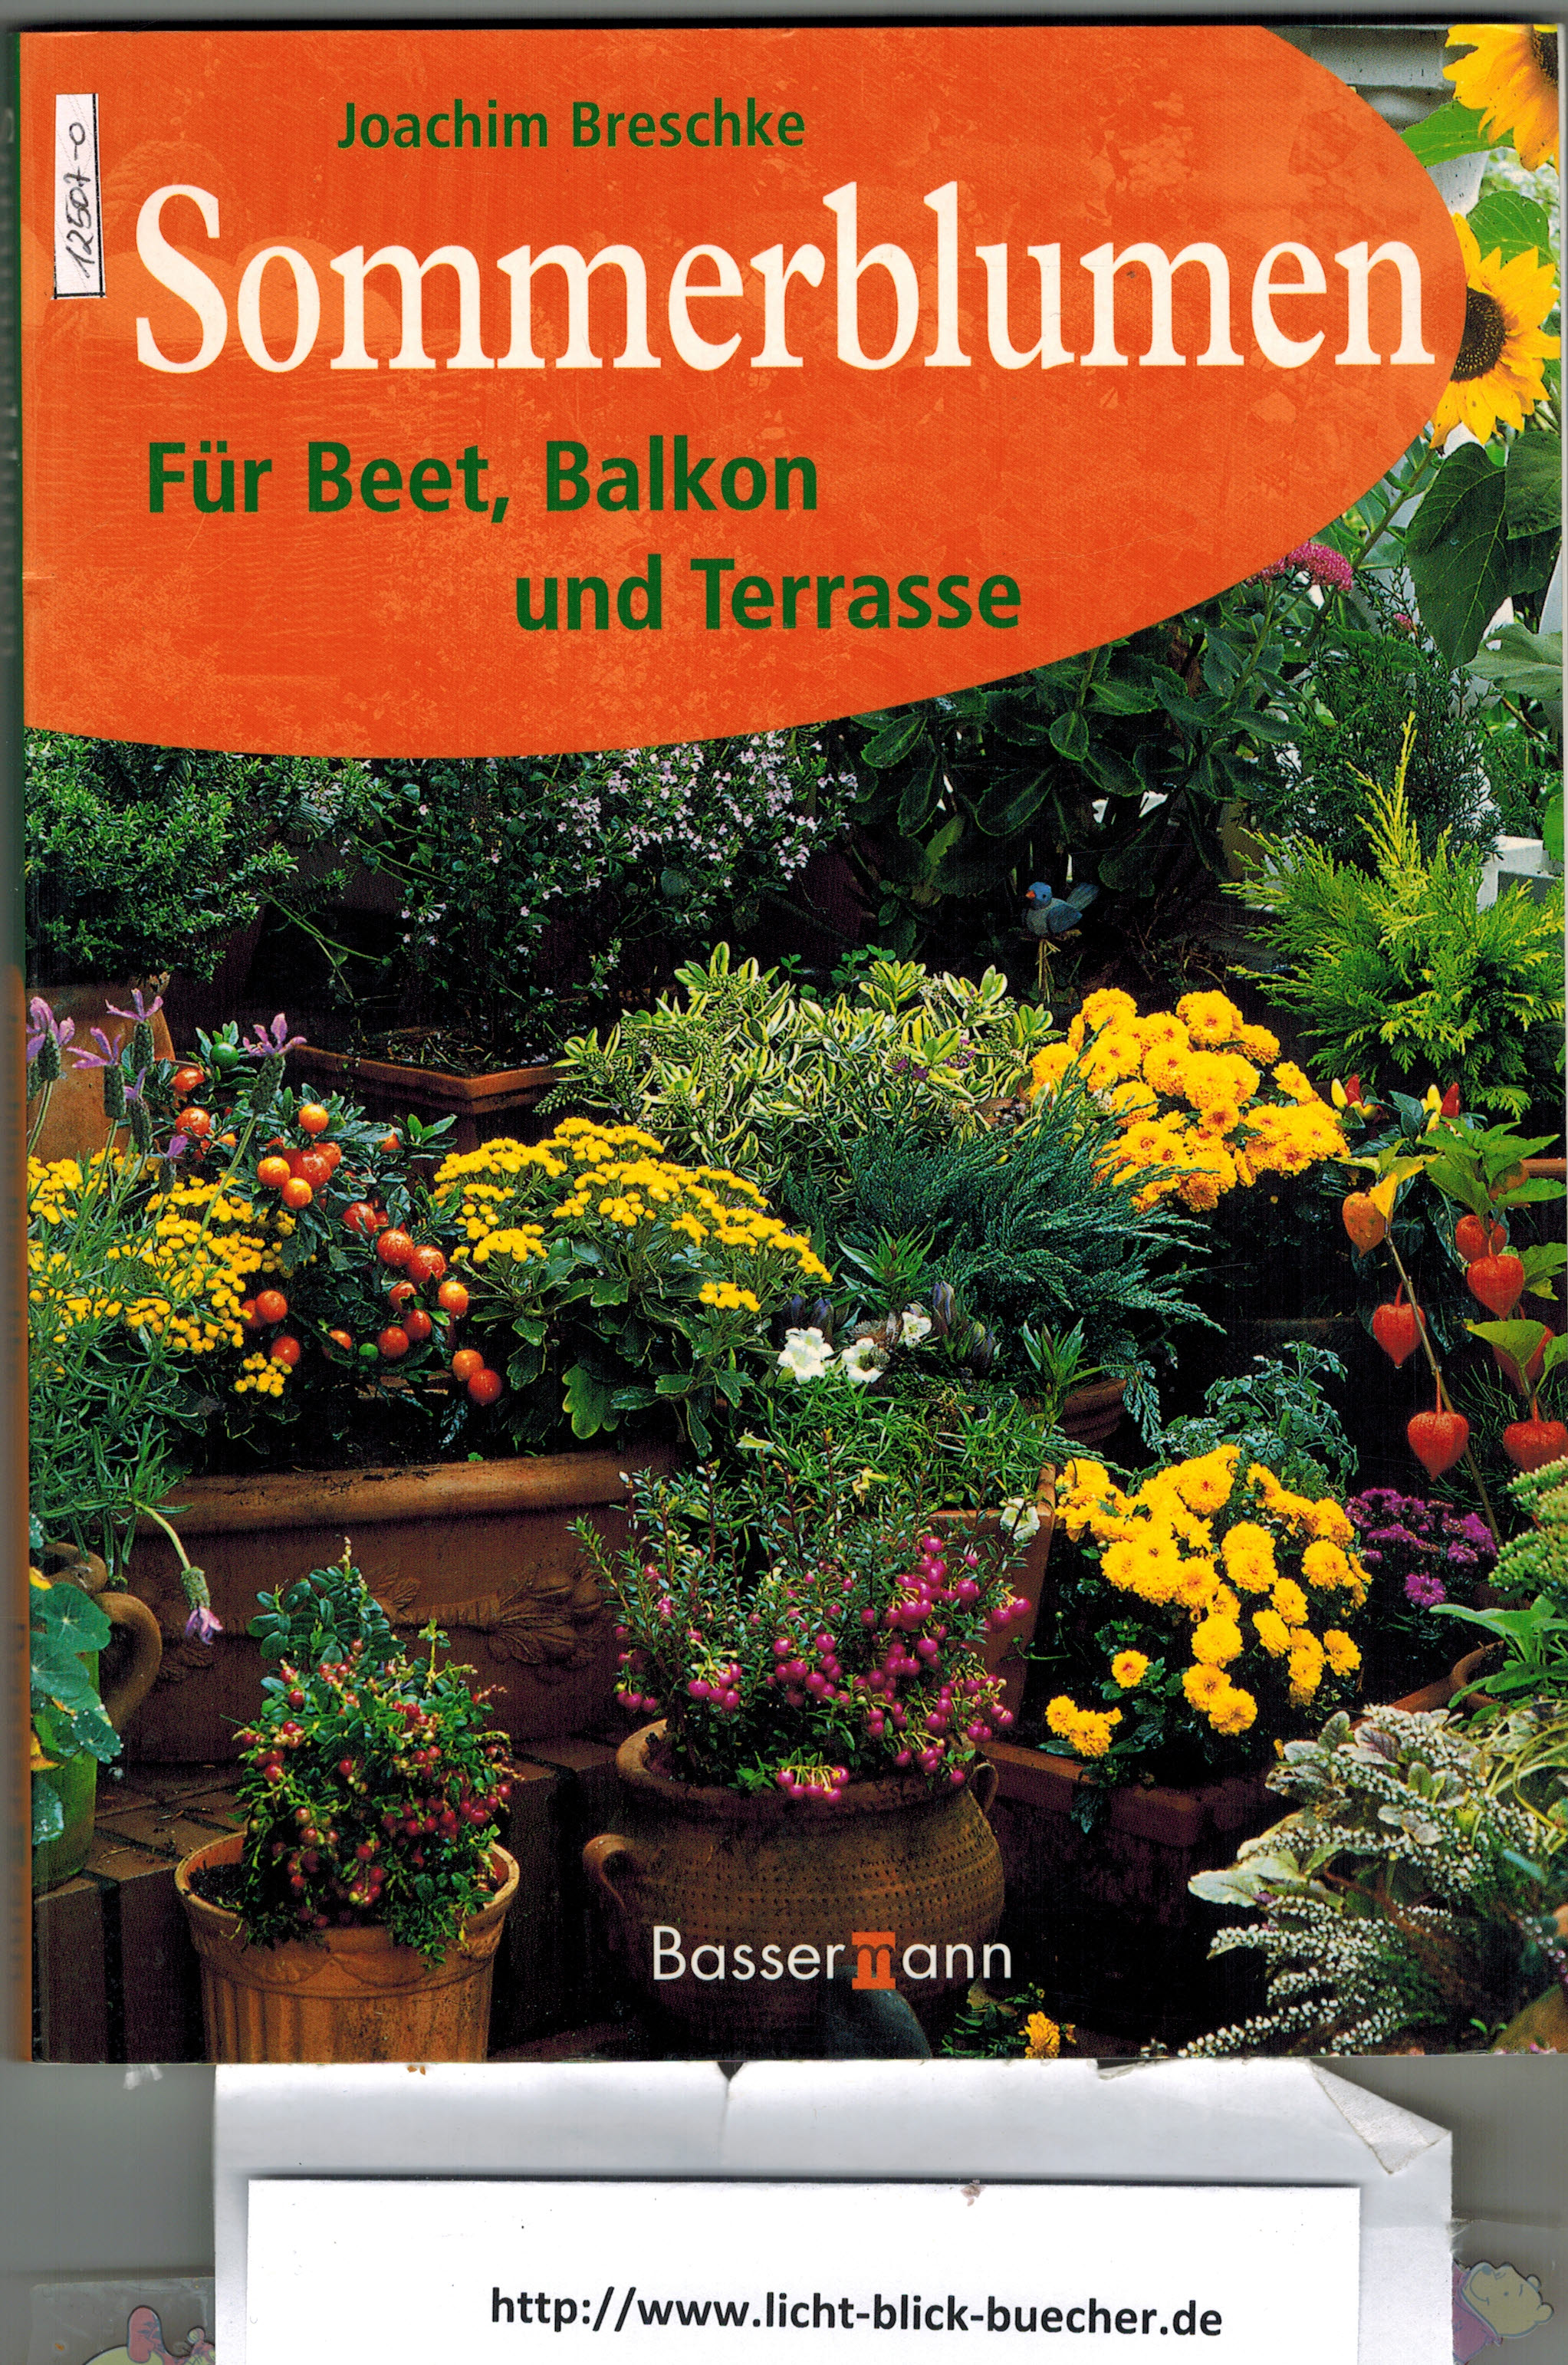 Sommerblumen - Fuer Beet, Balkon und TerasseJoachim Breschke